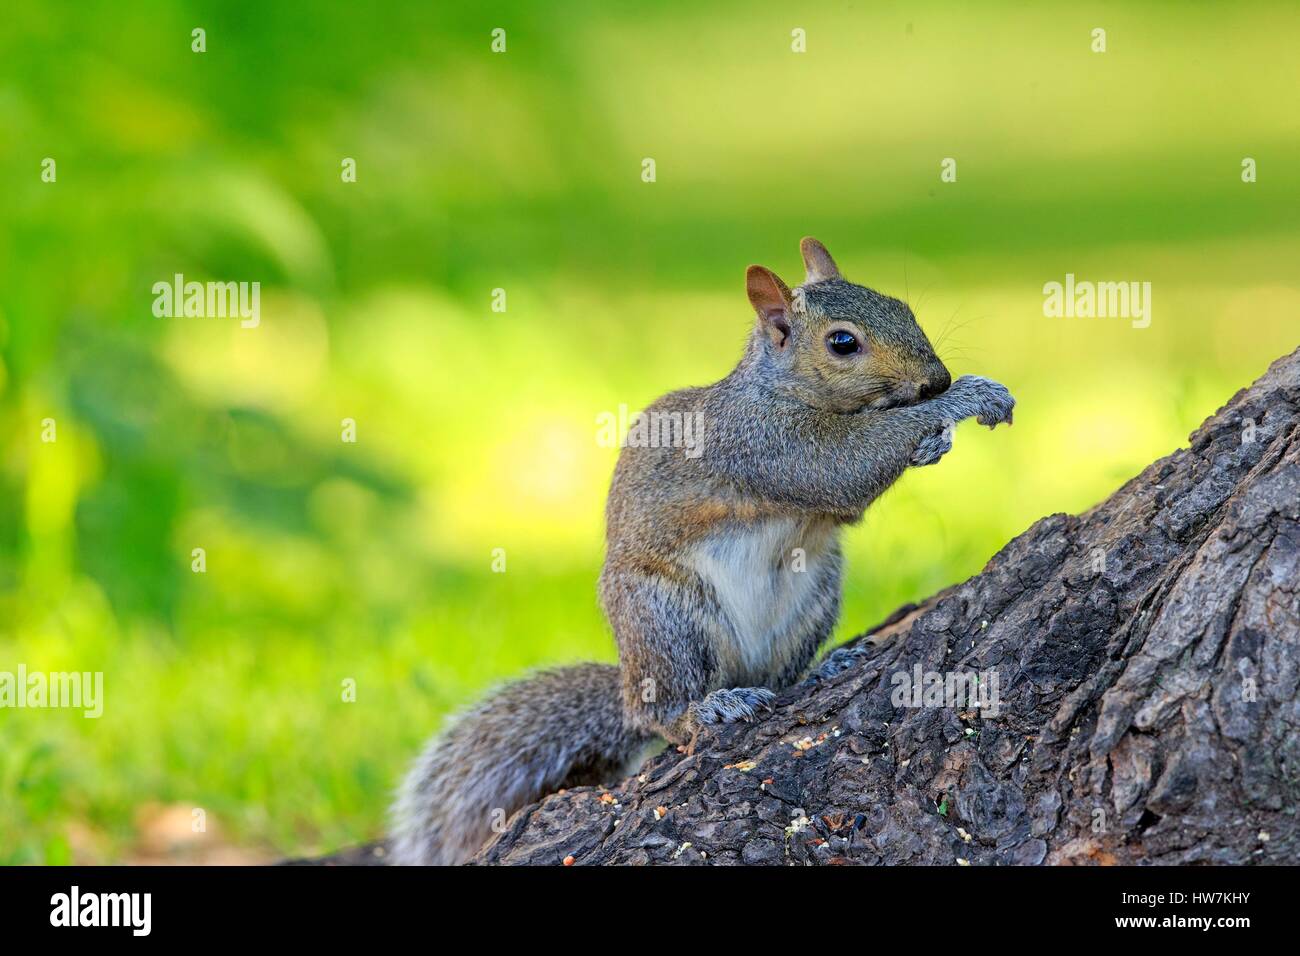 Stati Uniti, Minnesota, Orientale scoiattolo grigio o grigio scoiattolo (Sciurus carolinensis), sul terreno Foto Stock